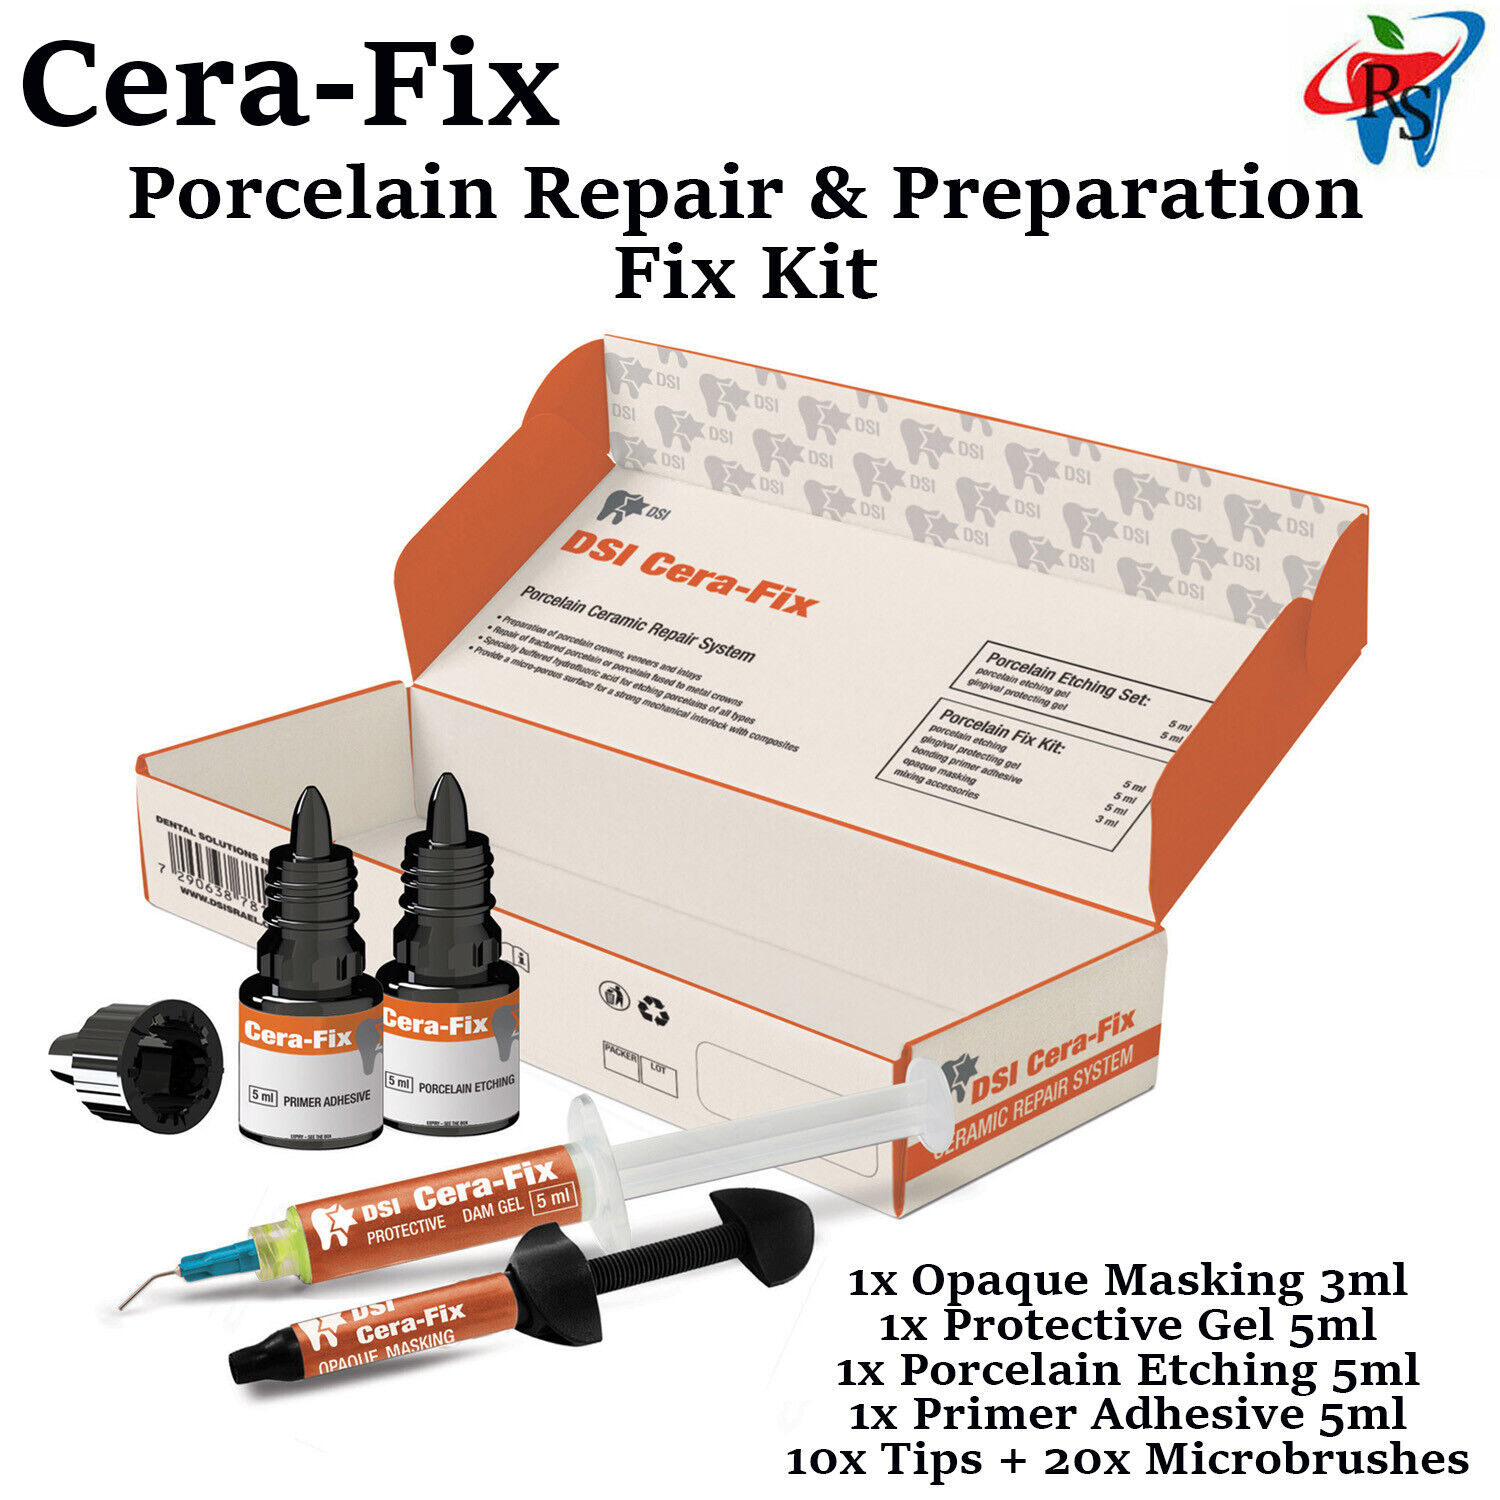 DSi Cera-fix Porcelain Repair and Preparation Kit